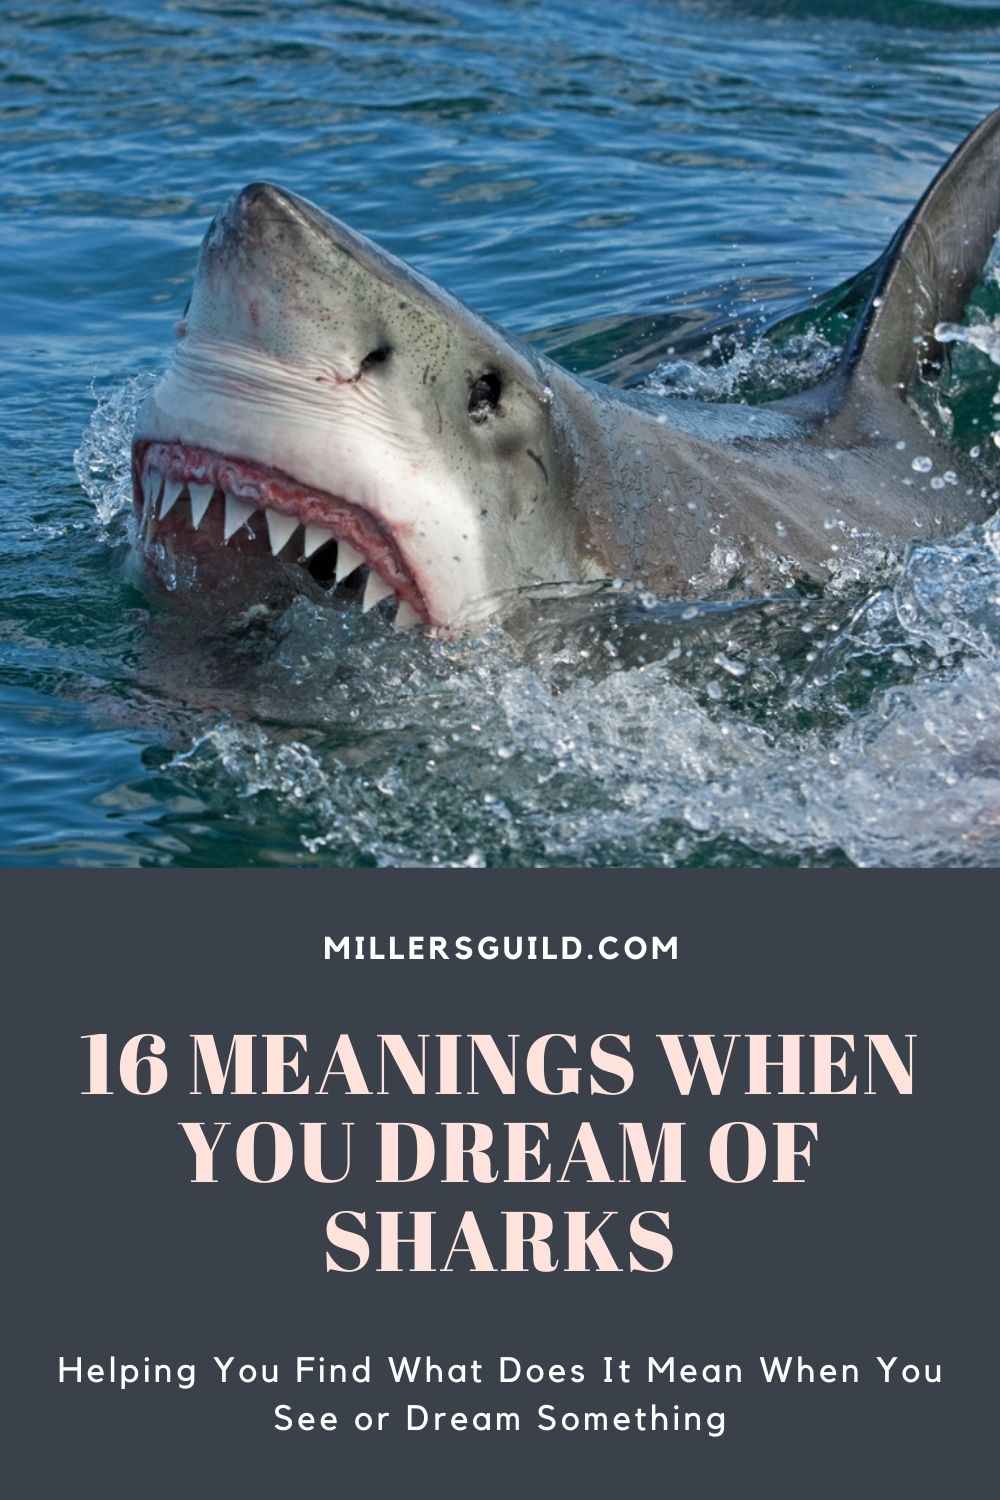  Soñar con tiburones que atacan a otros (Interpretación afortunada)